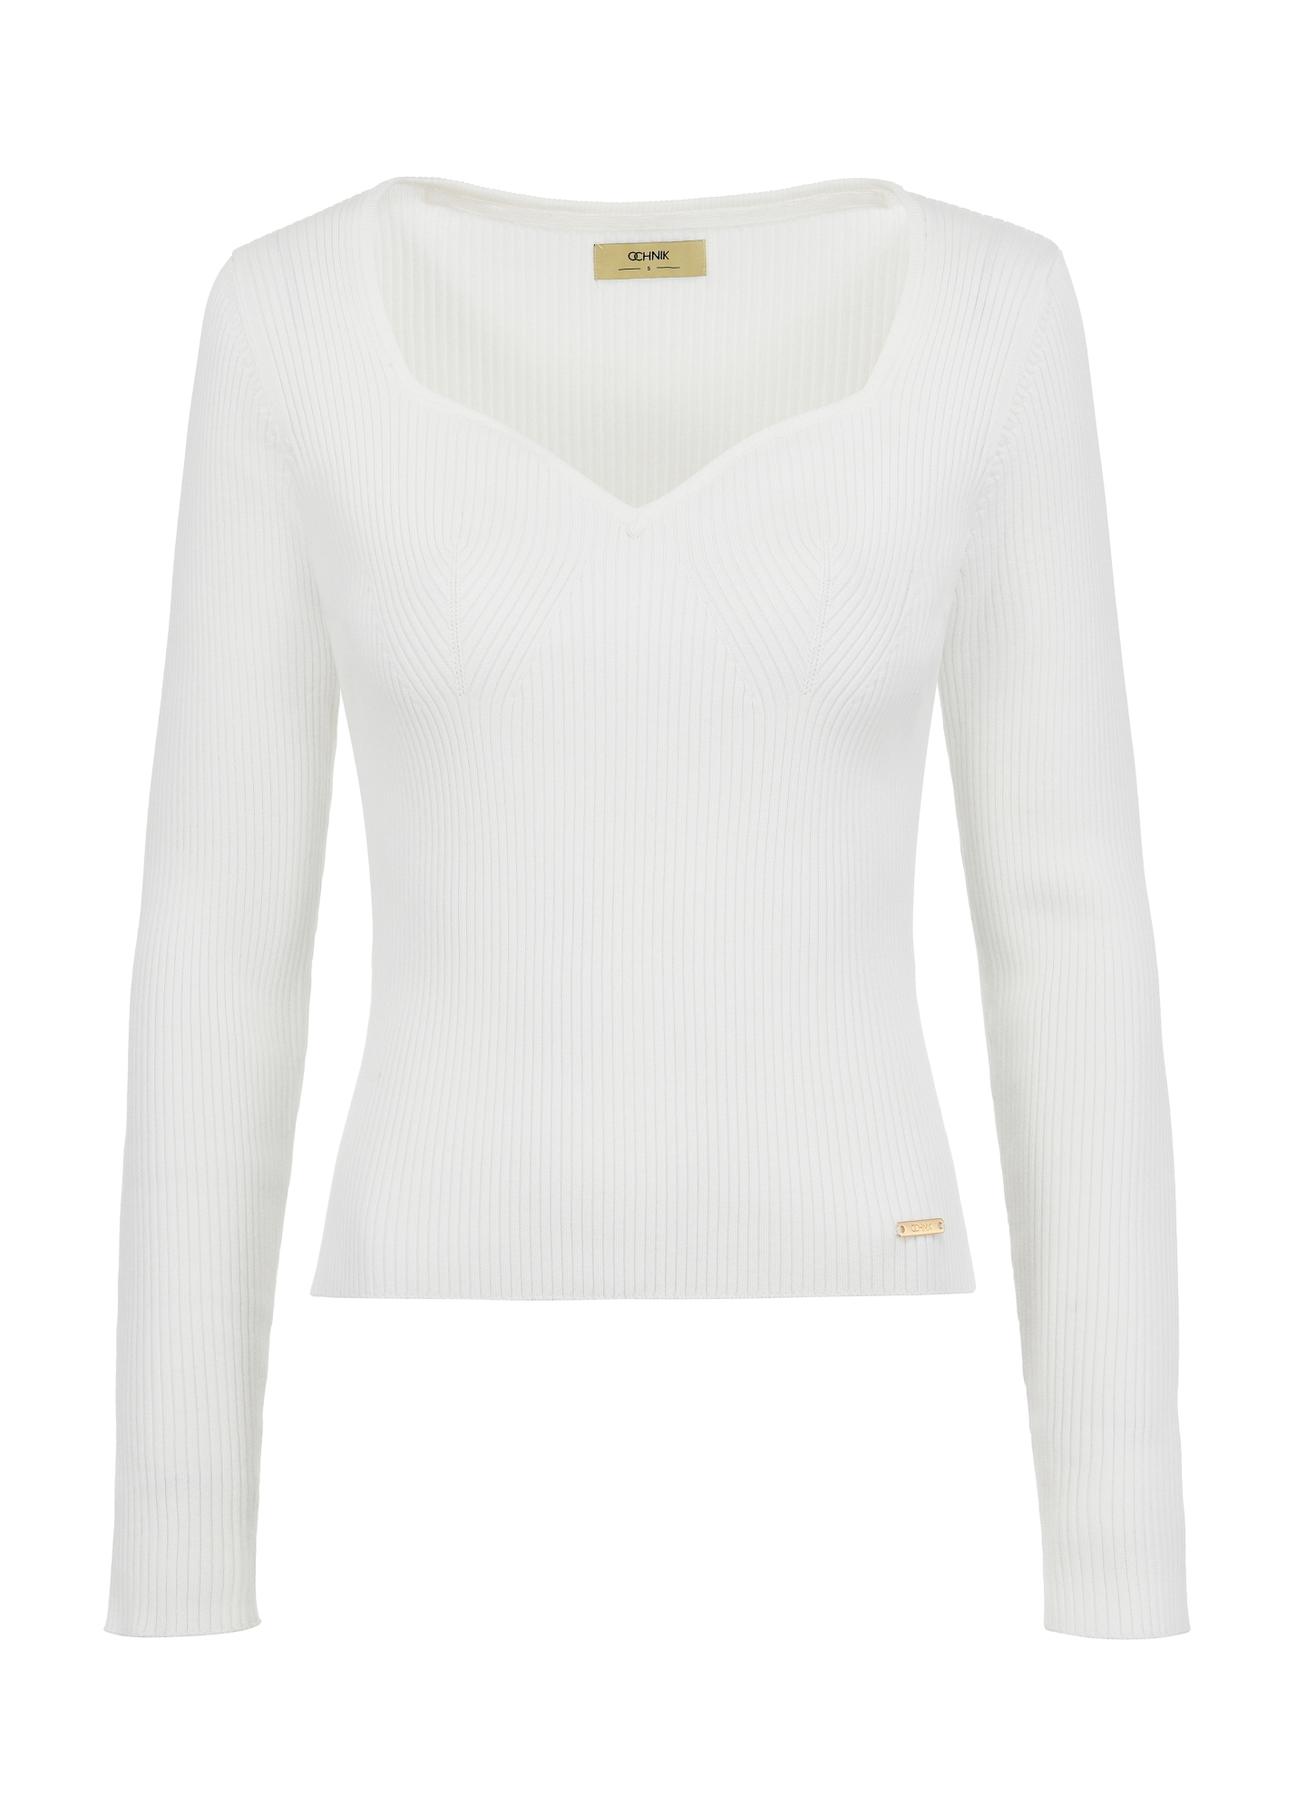 Kremowy sweter z dekoltem w kształcie serca SWEDT-0206-12(W24)